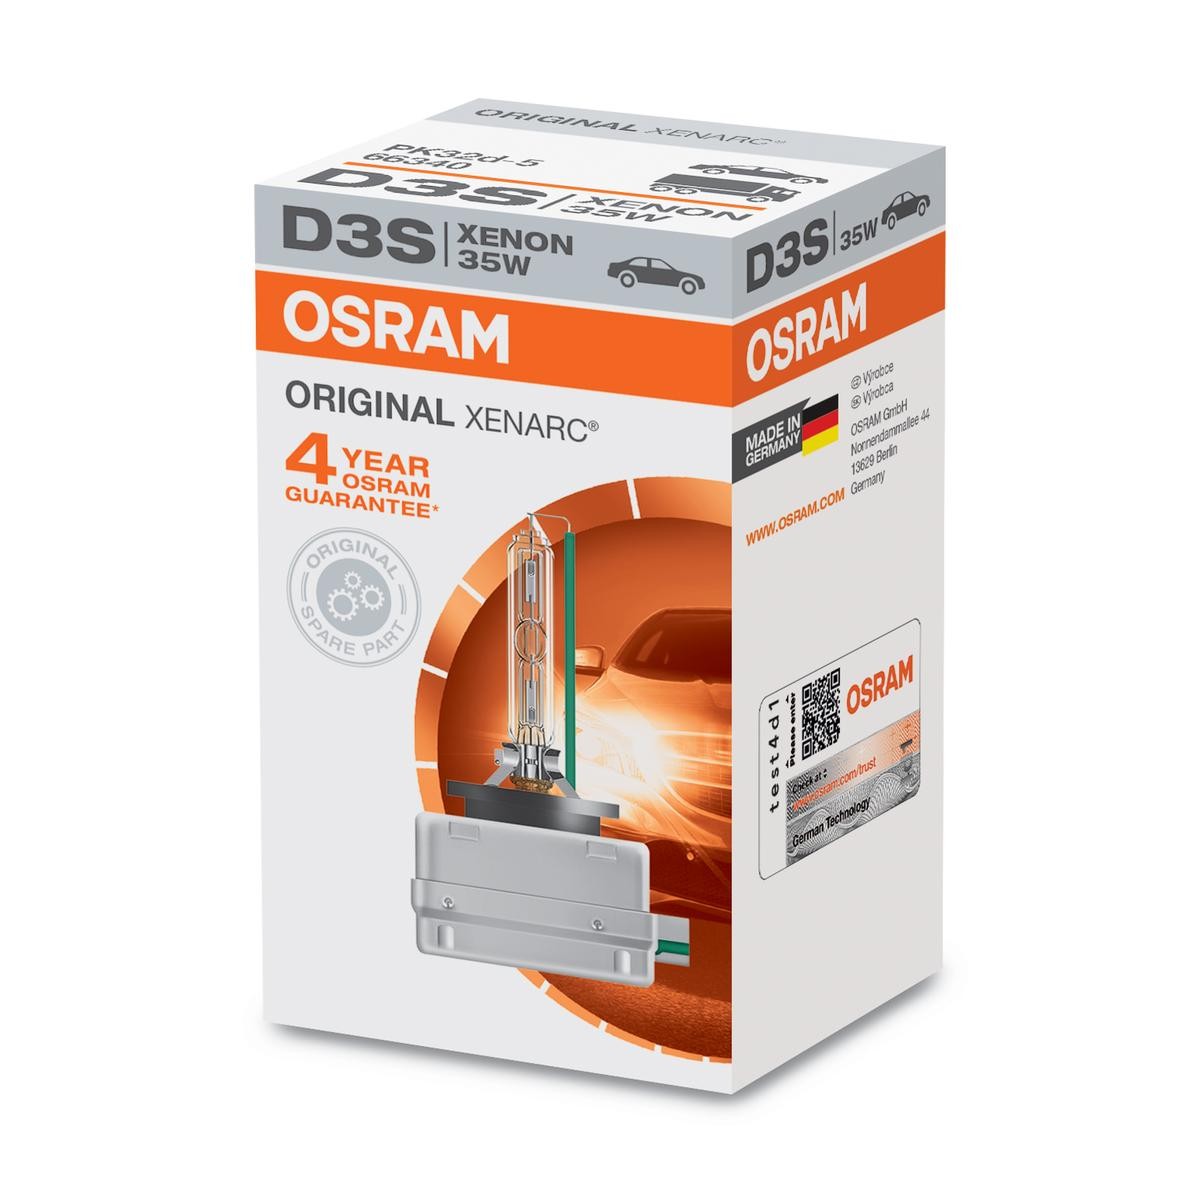 OSRAM XENARC ORIGINAL 66340 Lampada anabbagliante D3S 42V 35W4100K Xeno